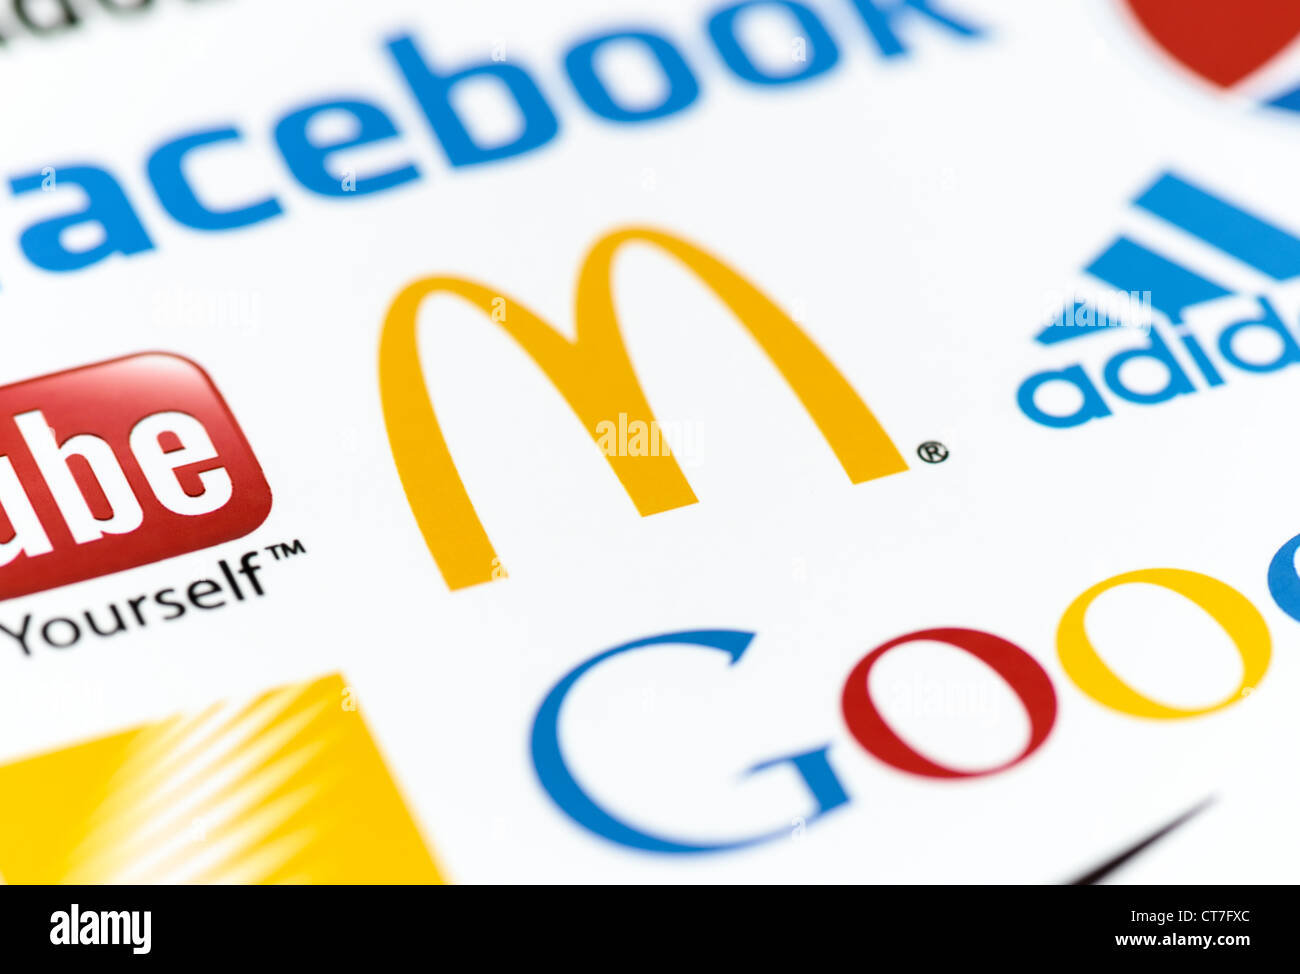 Foto von der McDonald's-Logo auf das bedruckte Papier zusammen mit einer Sammlung von bekannten Marken der Welt hautnah. Stockfoto